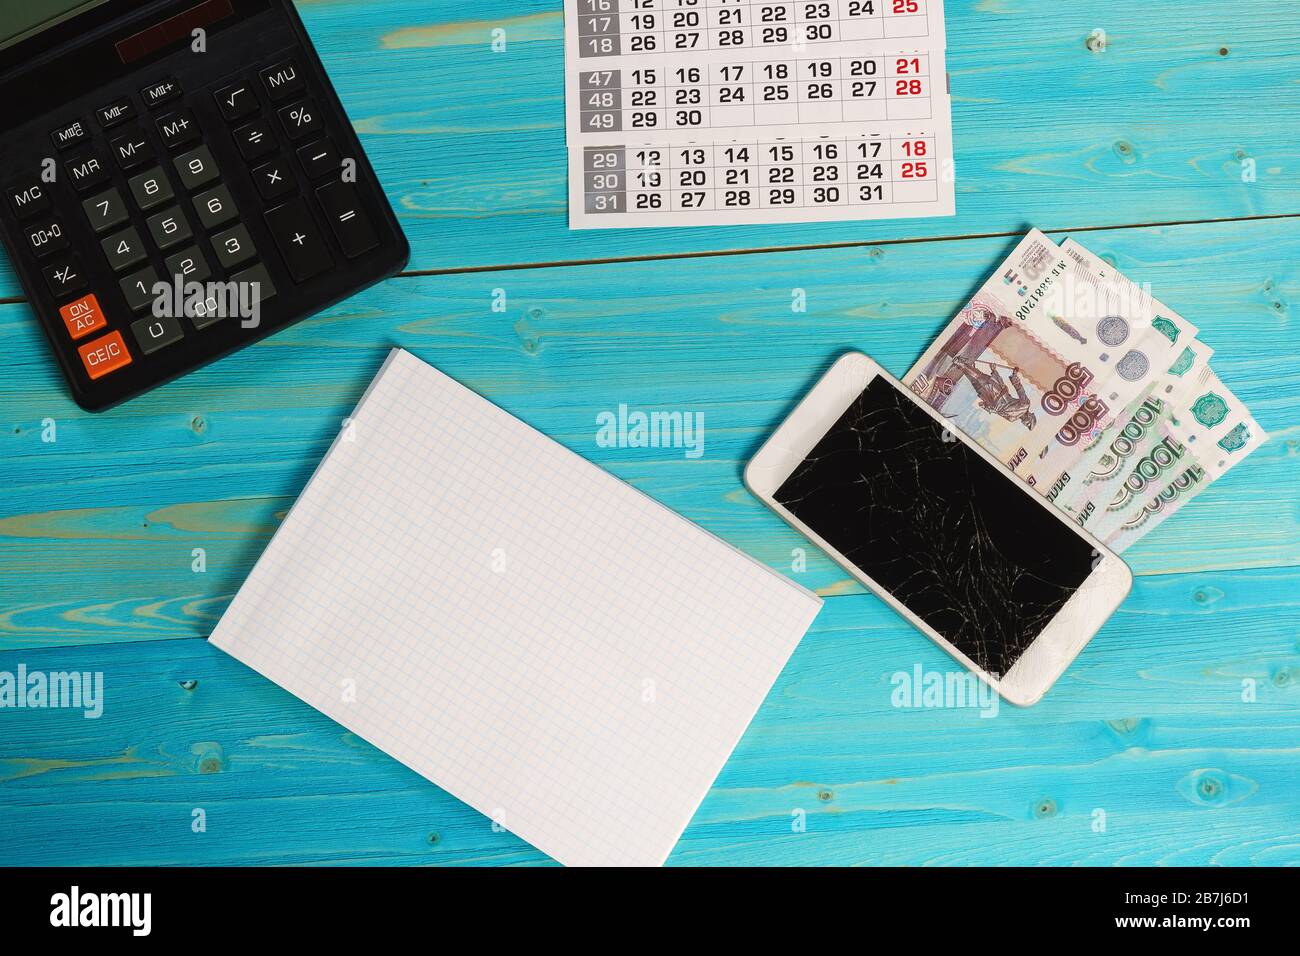 Calendario, notebook pulito, smartphone rotto e denaro russo sul tavolo blu. Le spese impreviste hanno interrotto i piani Foto Stock